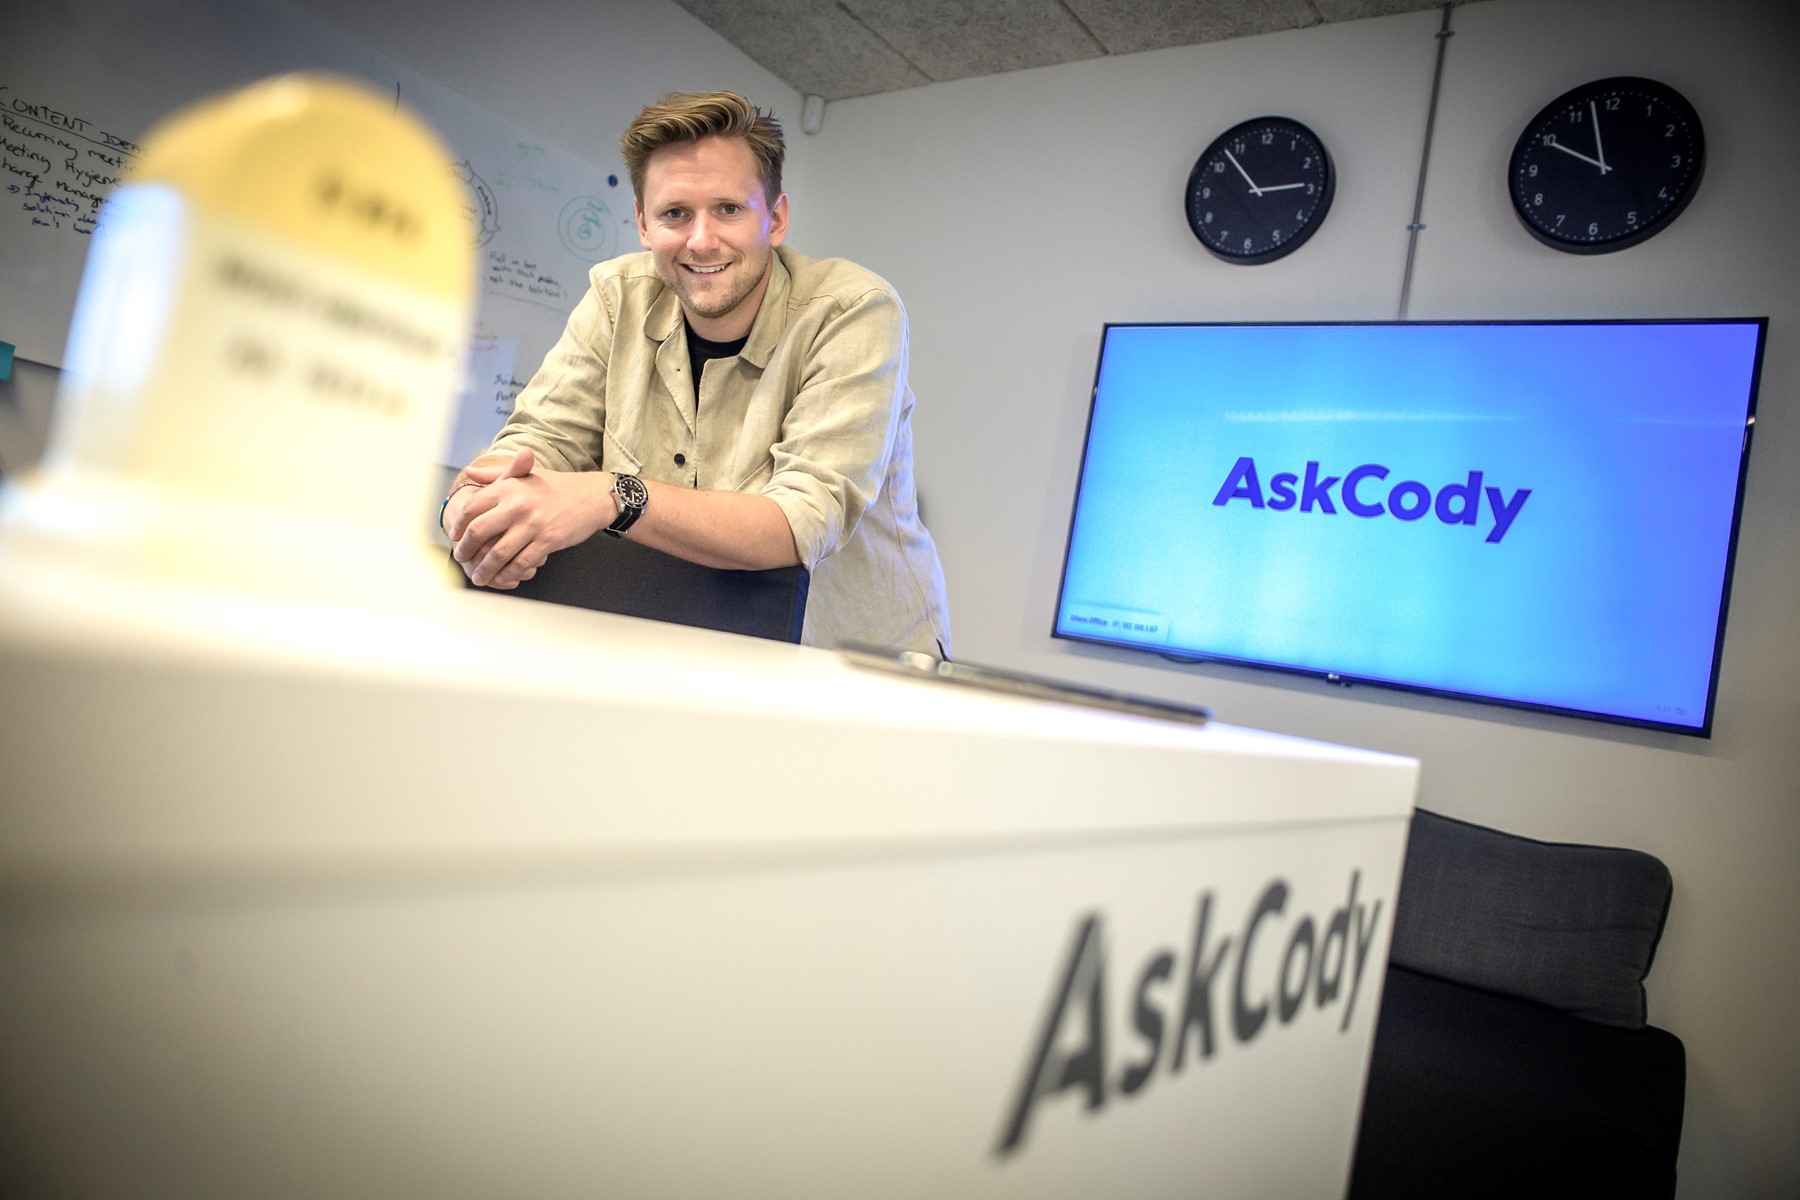 Allan Mørch har en kandidat i datalogisk informatik fra Aalborg Universitet. Han grundlagde AskCody, mens han skrev sin kandidat. Foto: Martin Damgård